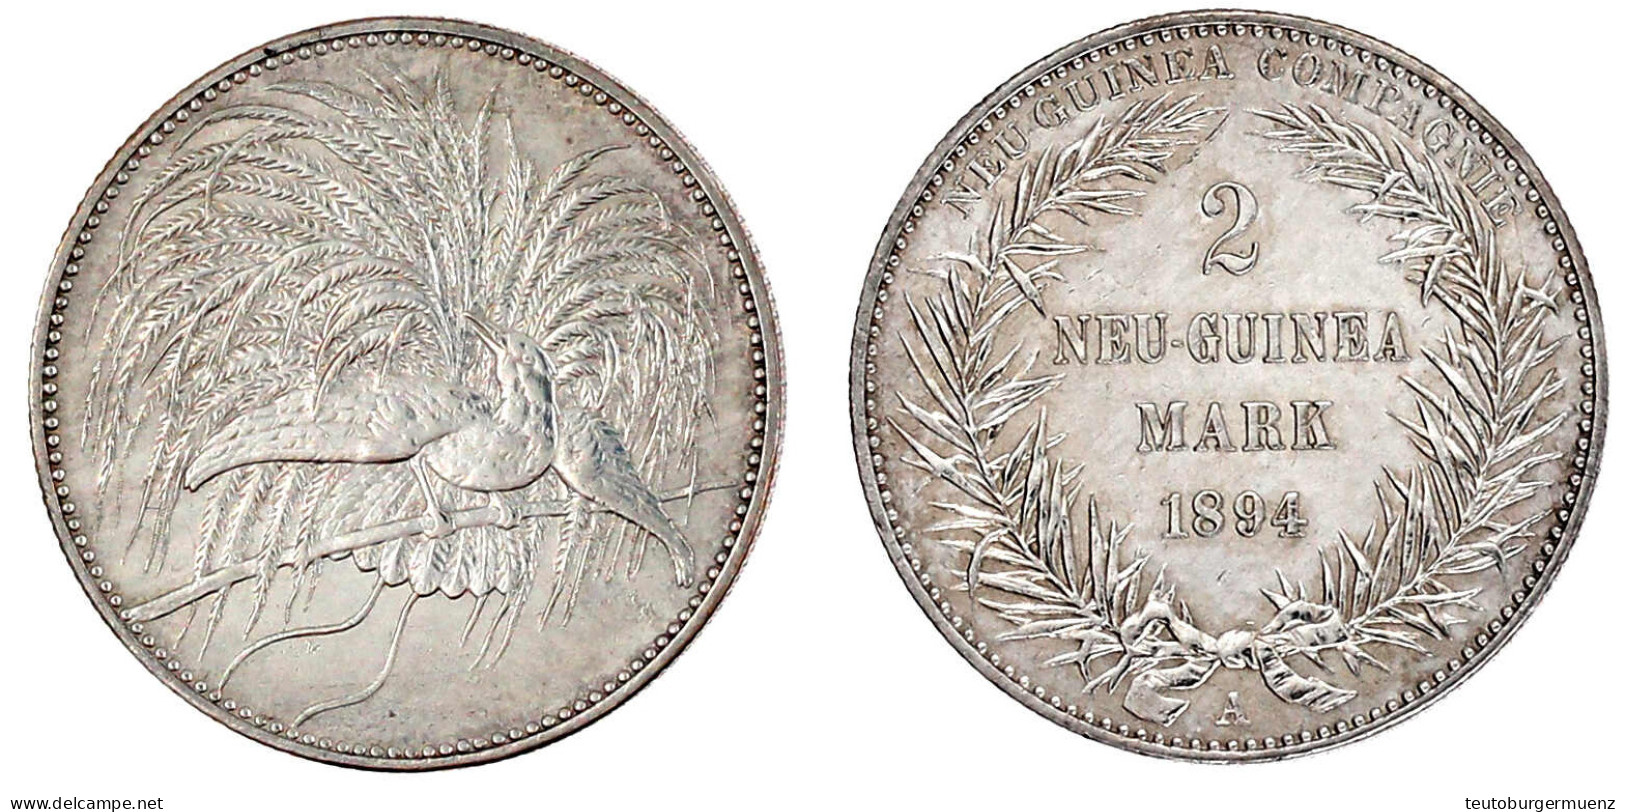 2 Neuguinea-Mark 1894 A, Paradiesvogel. Gutes Vorzüglich, Etwas Berieben. Jaeger 706. - Duits Nieuw-Guinea